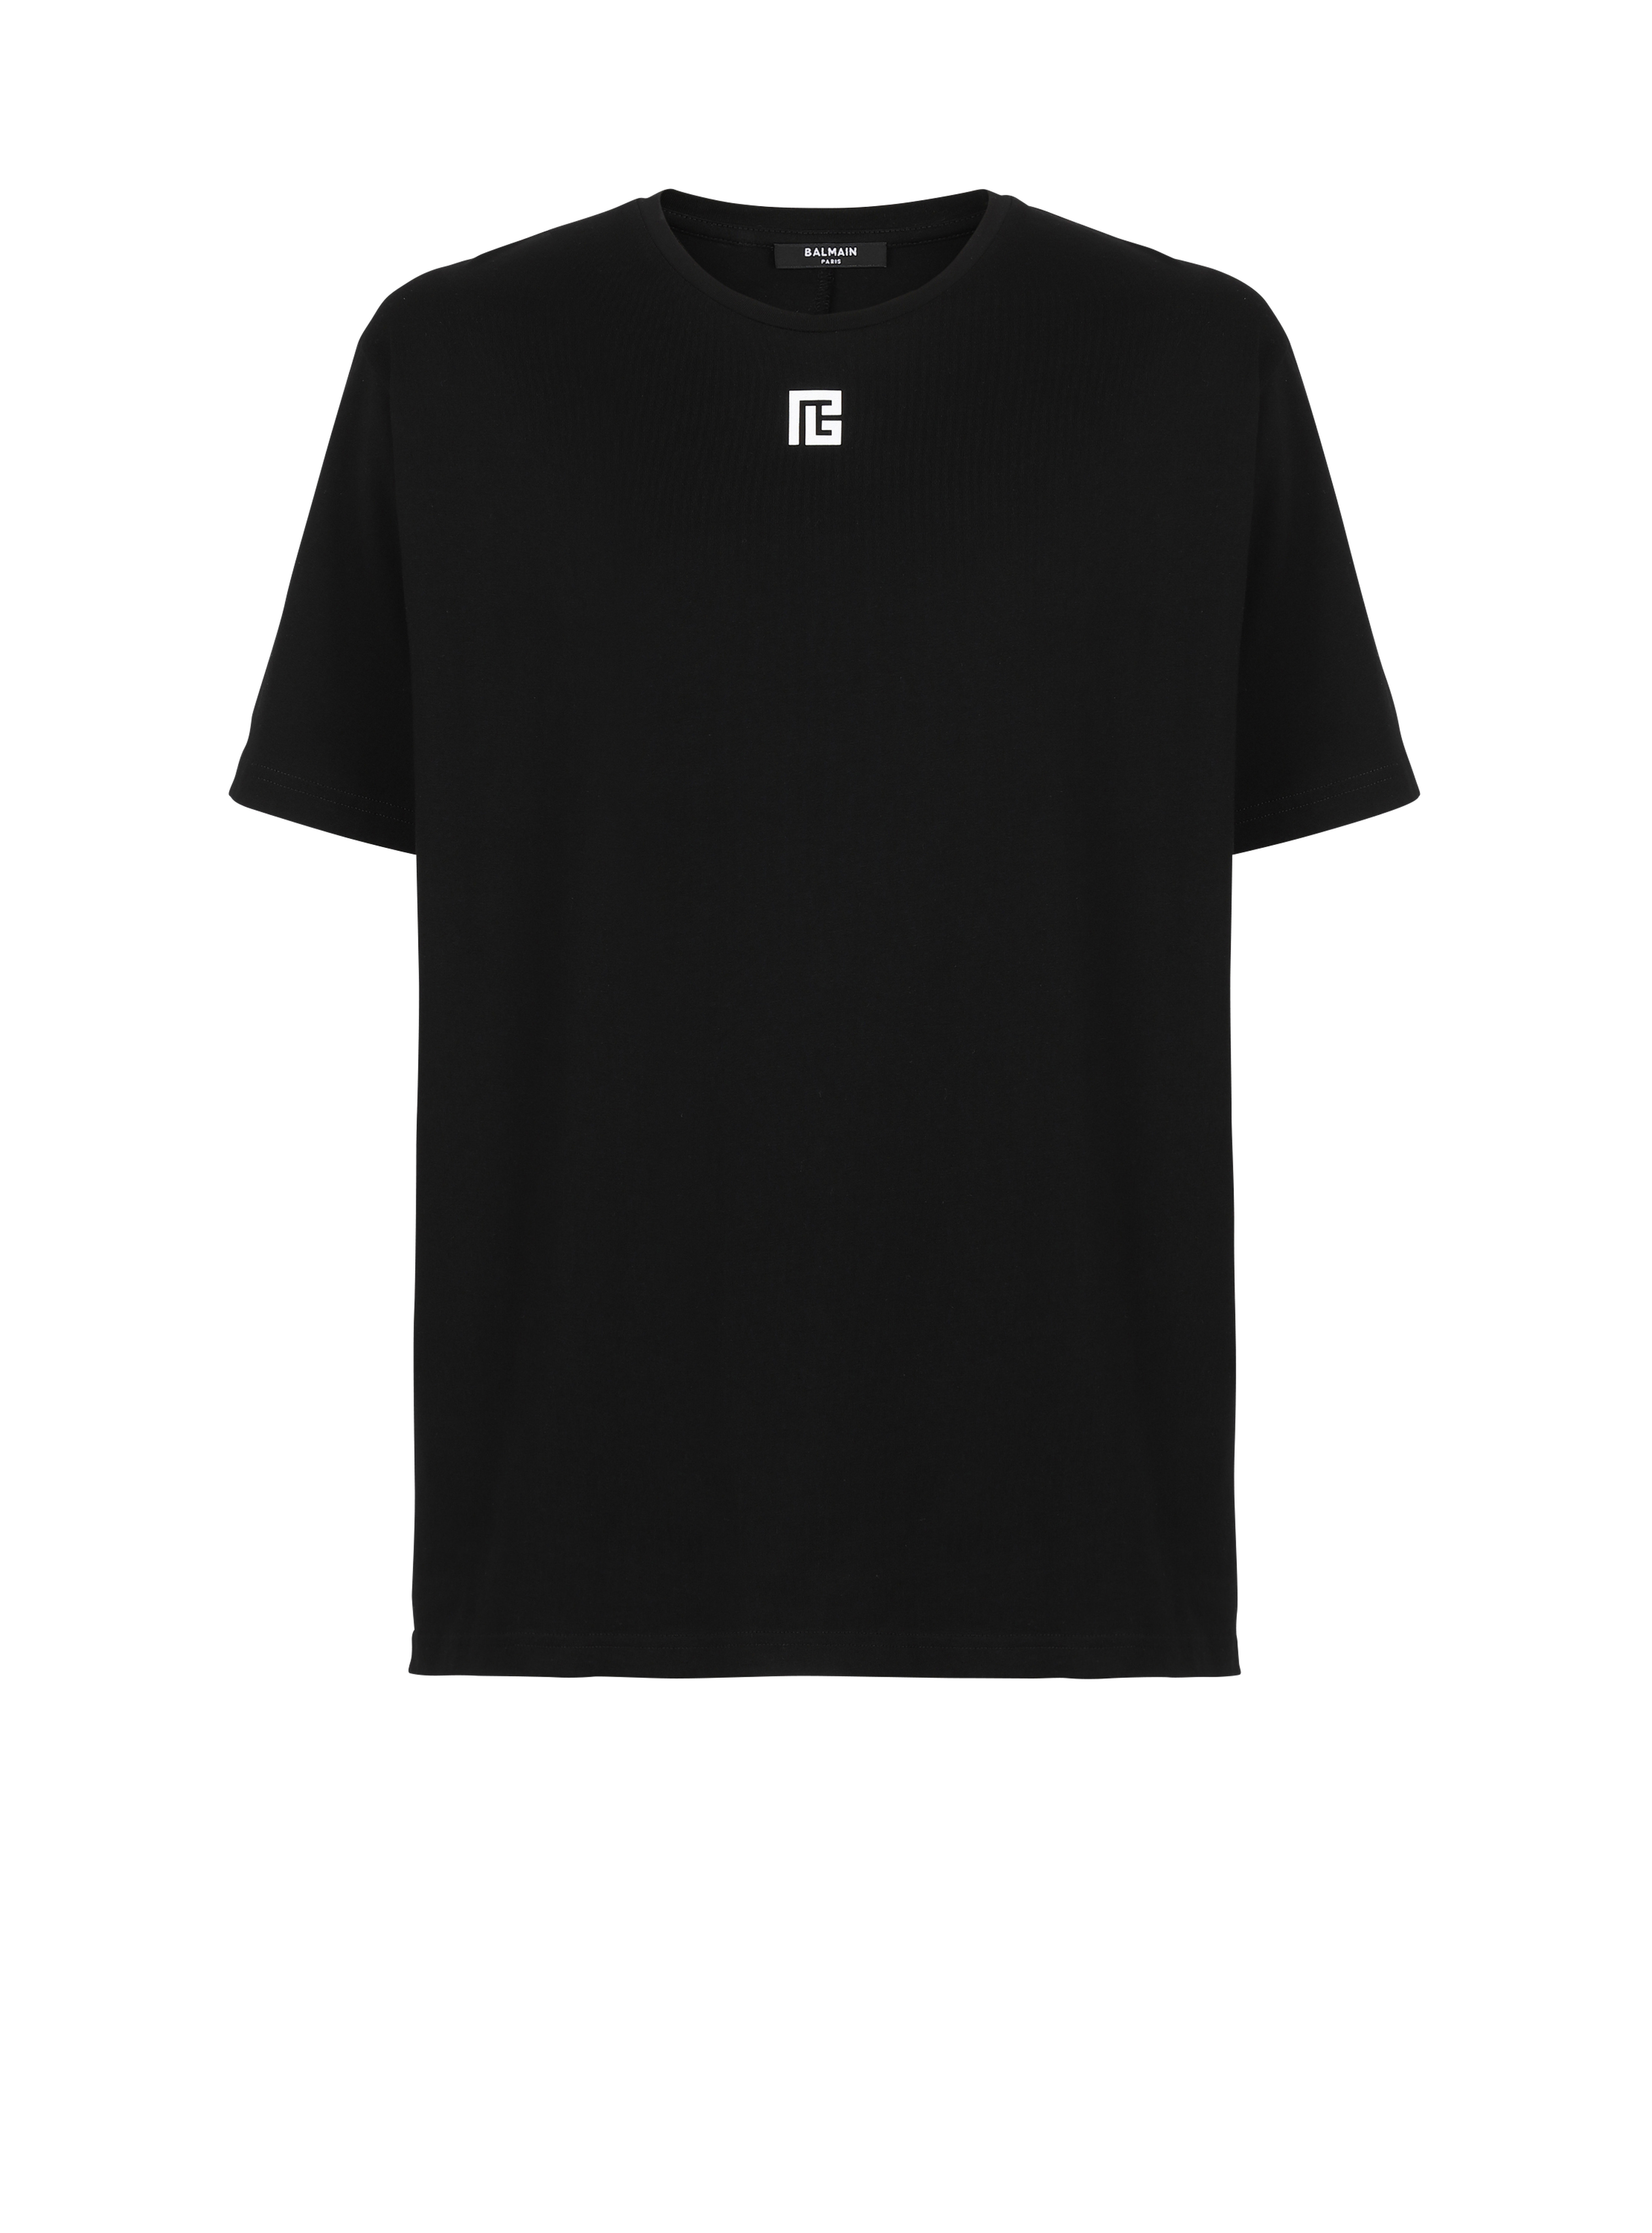 T-shirt oversize in cotone con maxi logo Balmain, nero